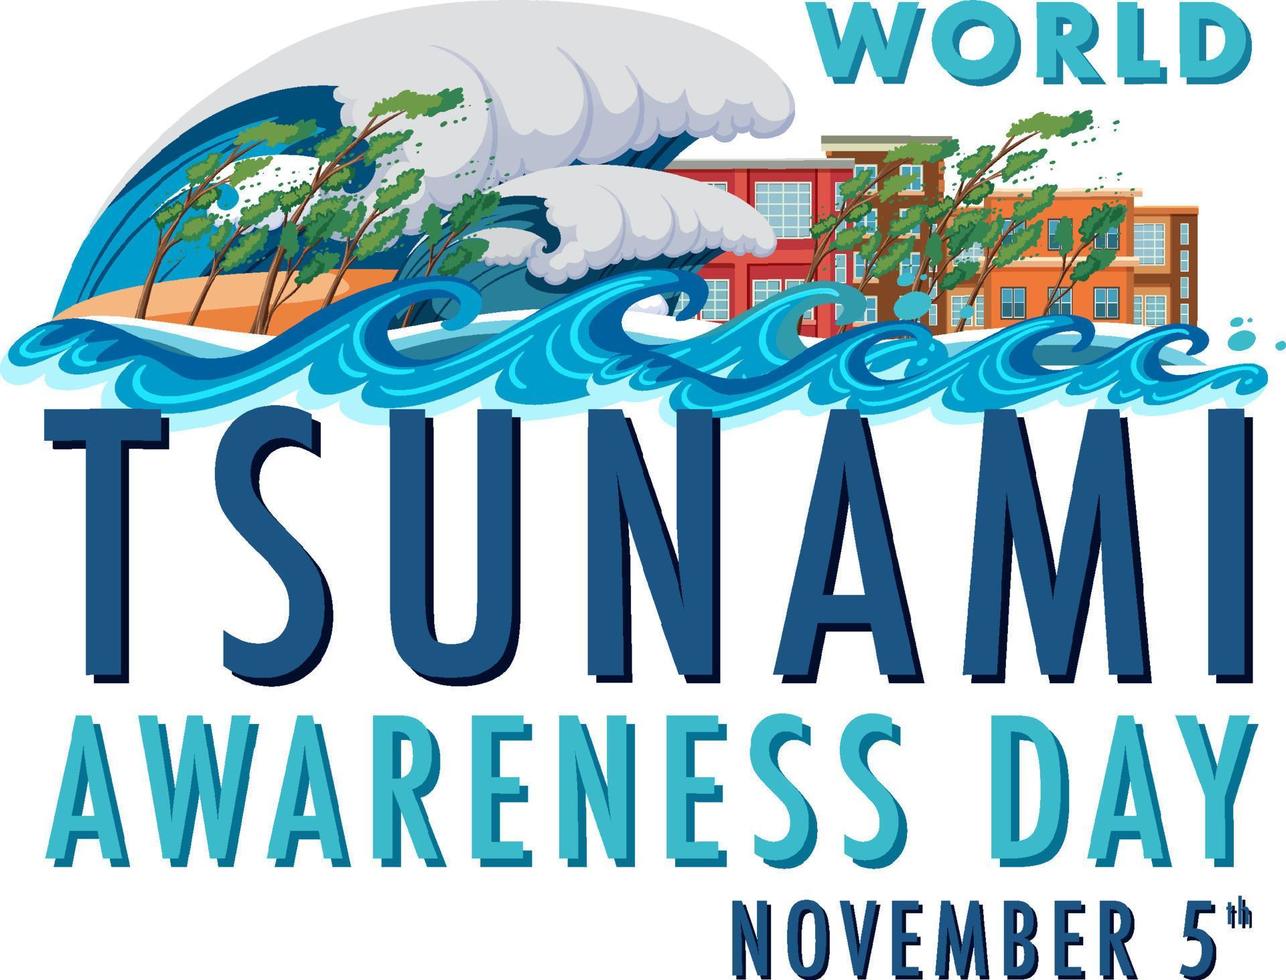 wereld tsunami bewustzijn dag banier ontwerp vector